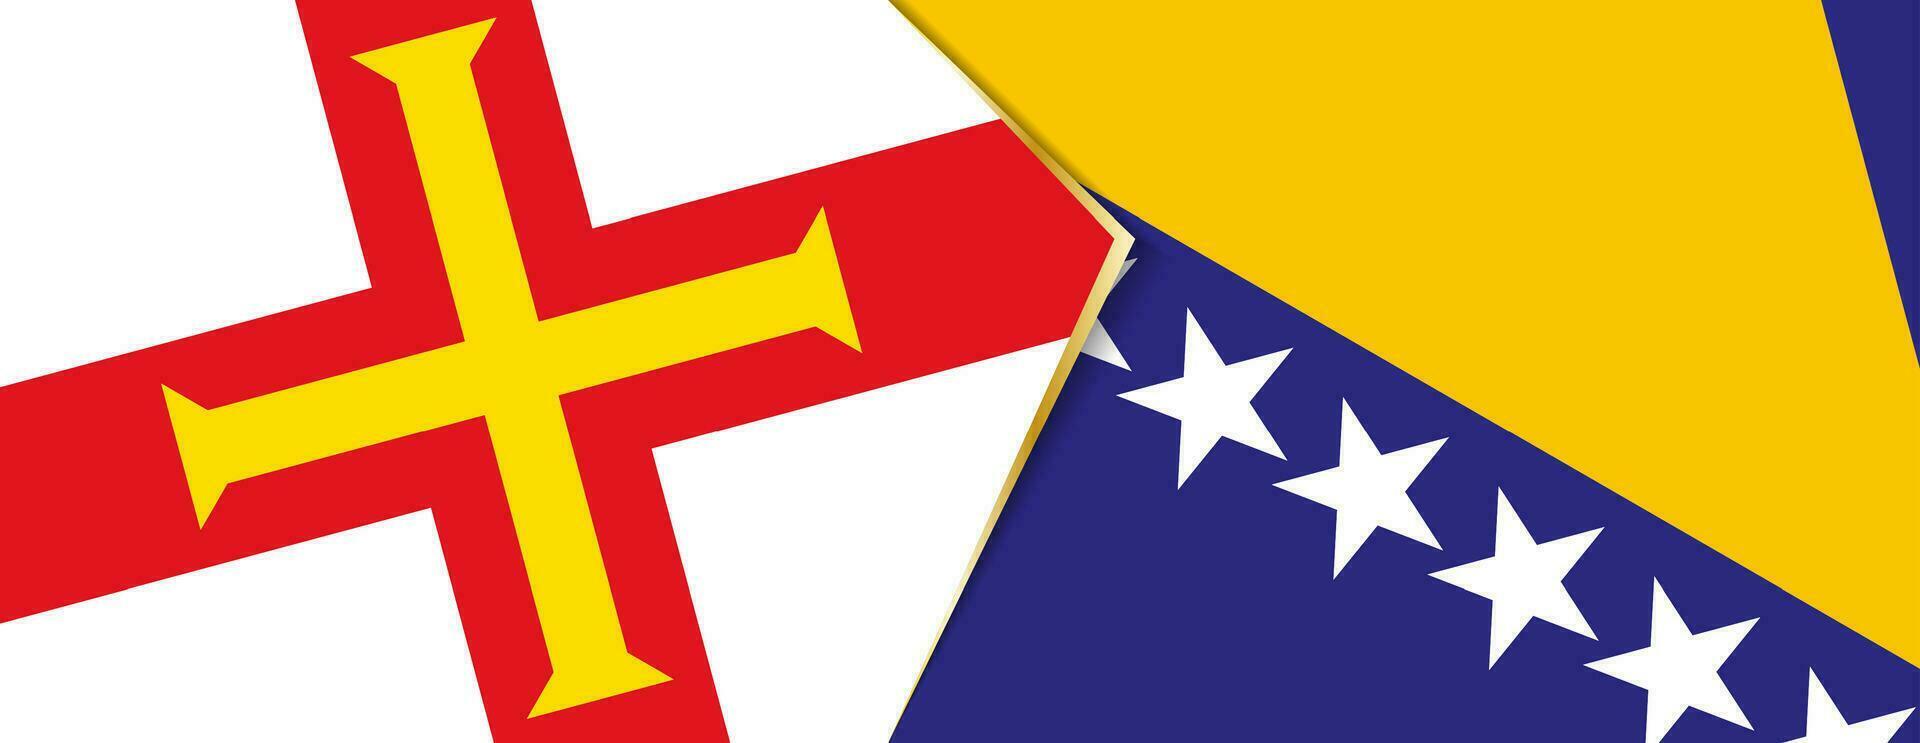 Guernesey et Bosnie et herzégovine drapeaux, deux vecteur drapeaux.